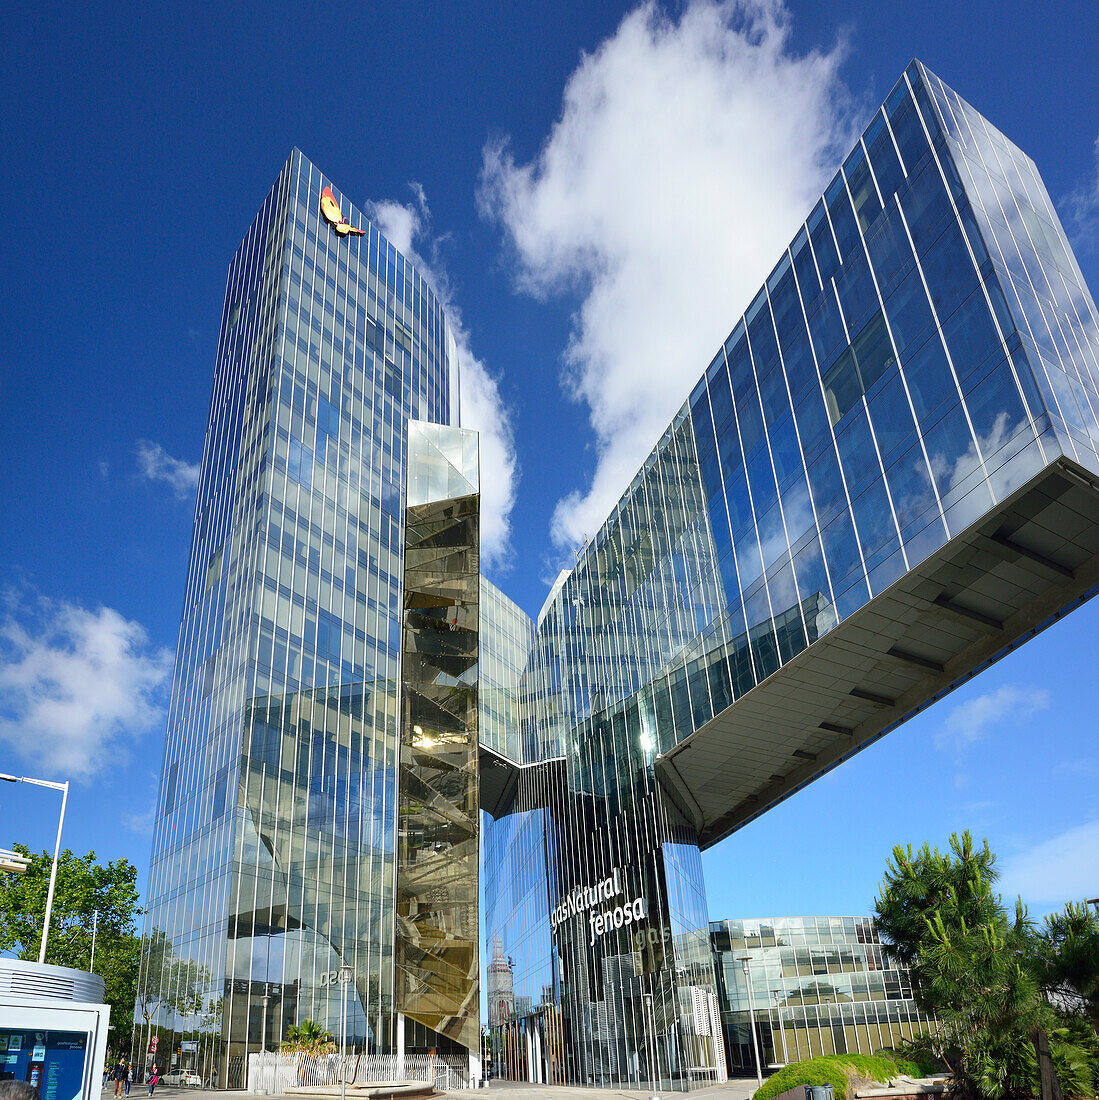 Modernes Bürogebäude, gasNatural, Architekten Enric Miralles und Benedetta Tagliabue, Barceloneta, Barcelona, Katalonien, Spanien